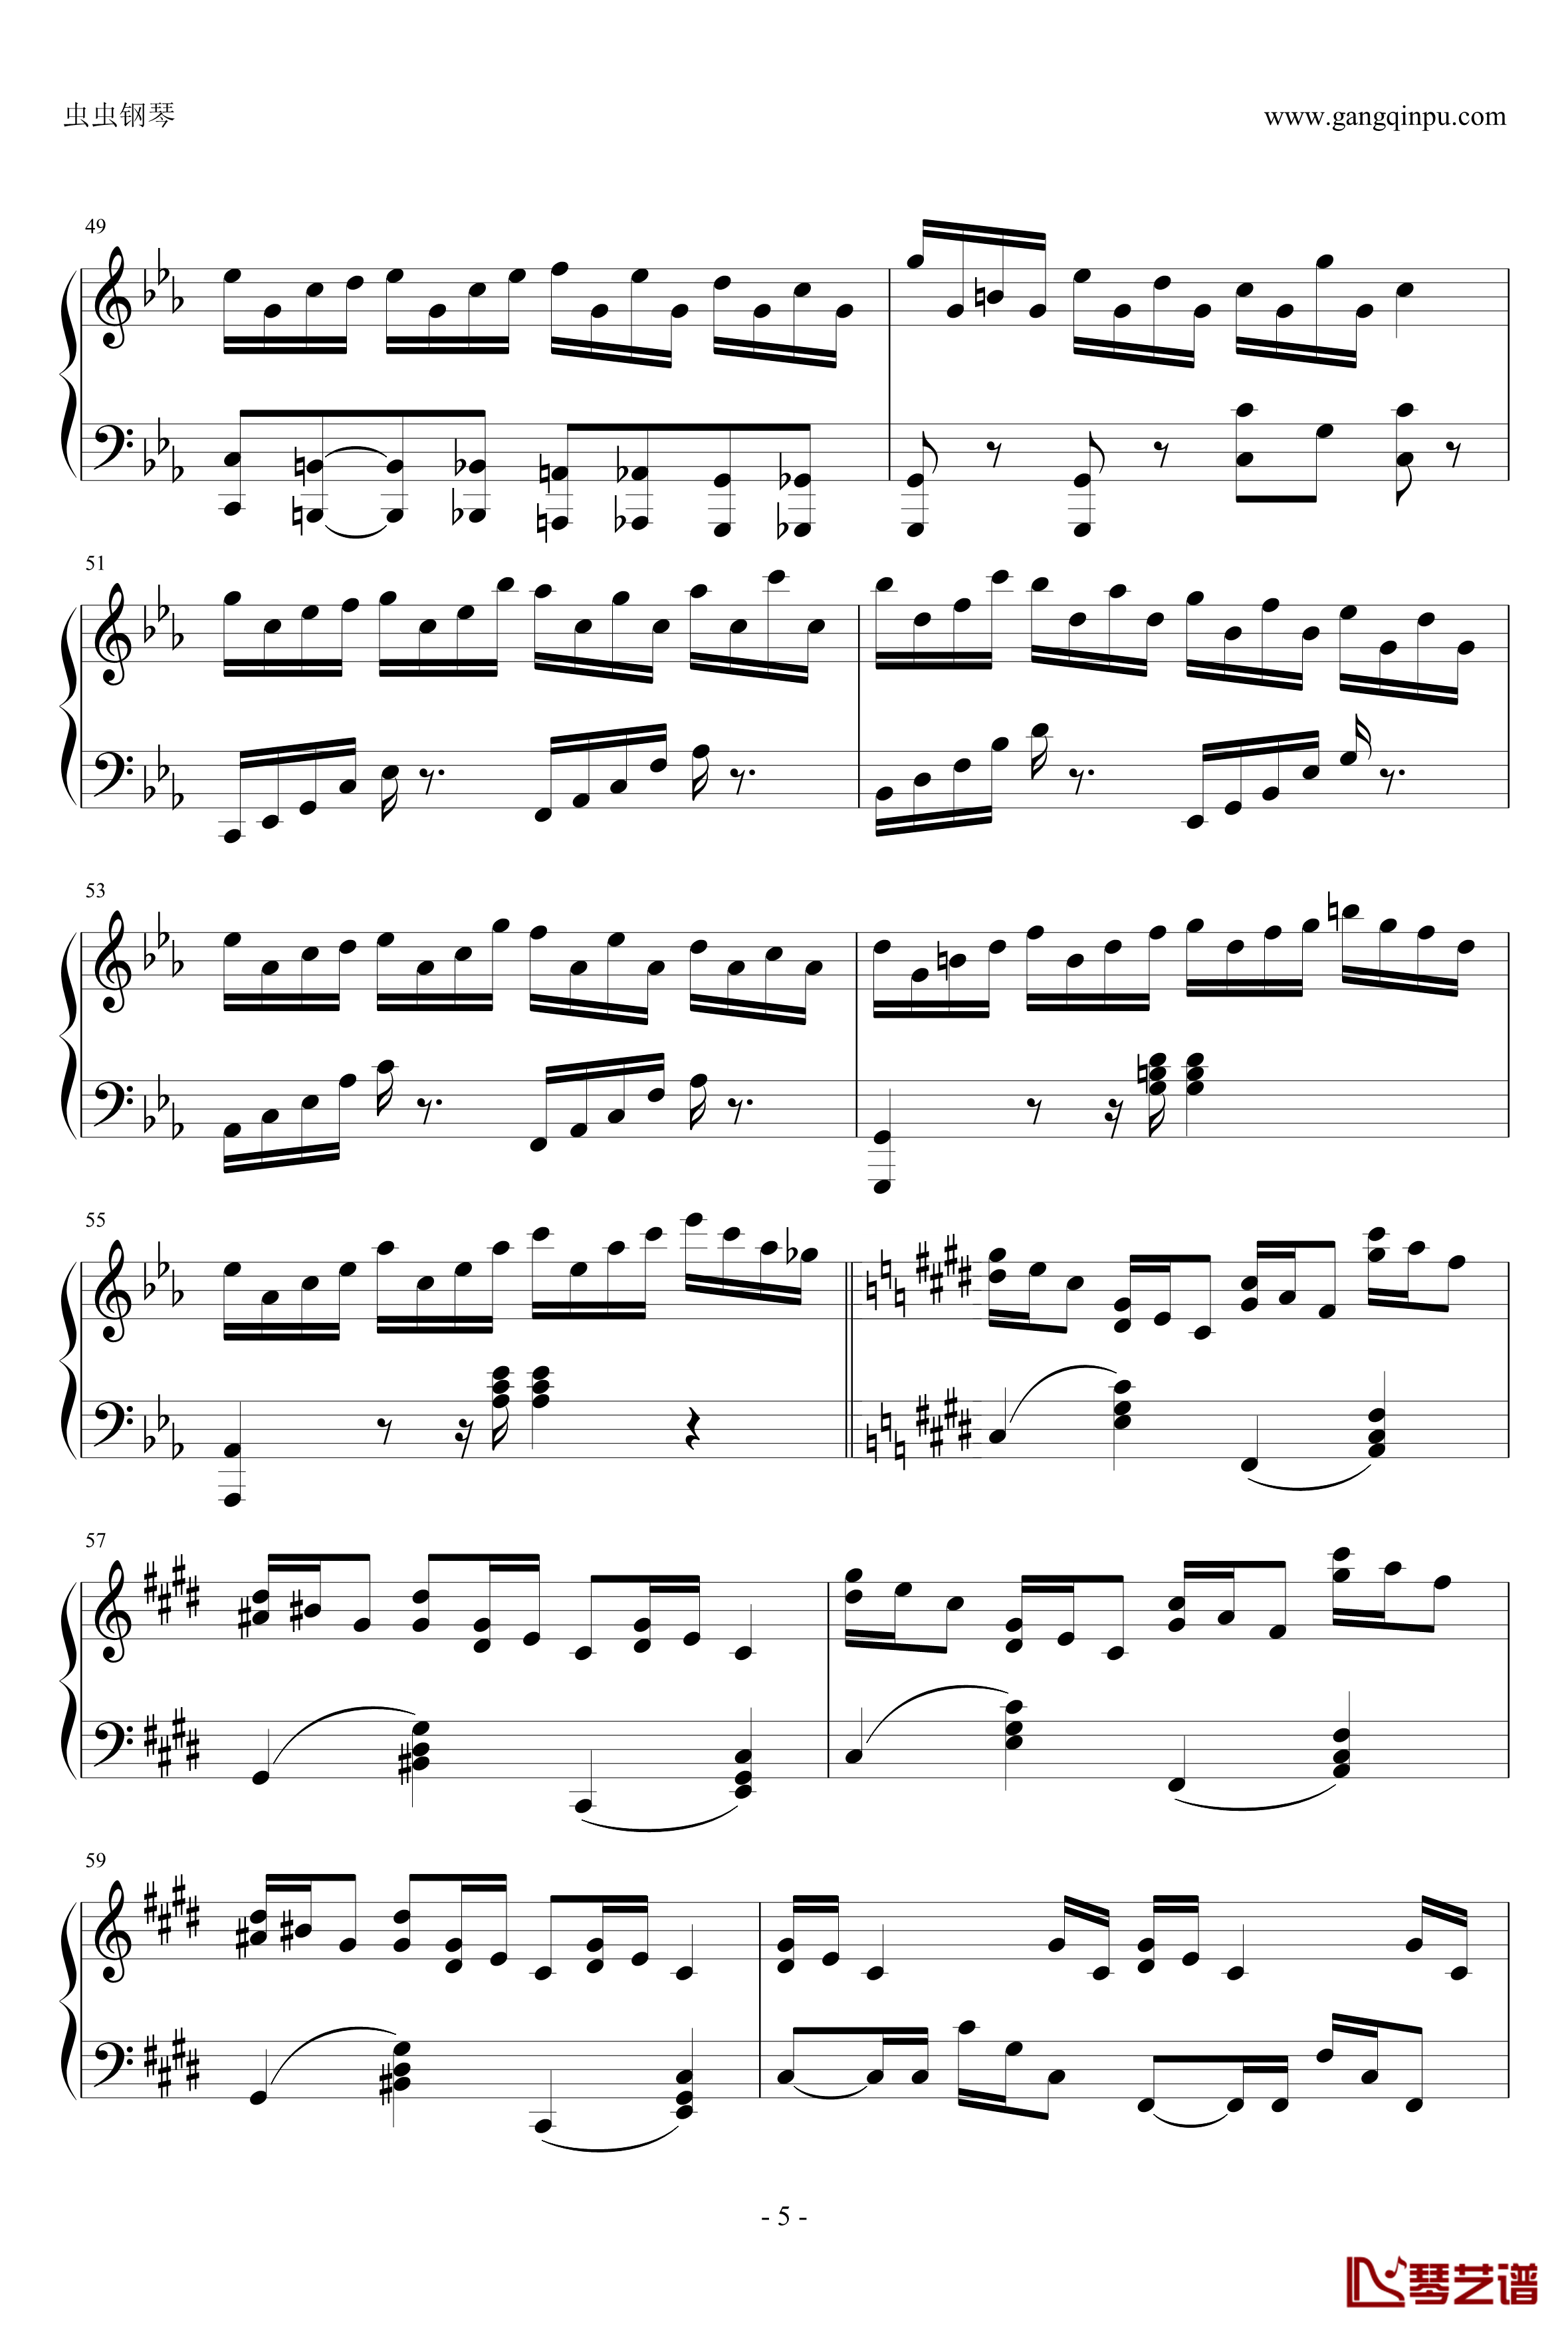 克罗地亚狂想曲钢琴谱-这个才是原版-马克西姆-Maksim·Mrvica5